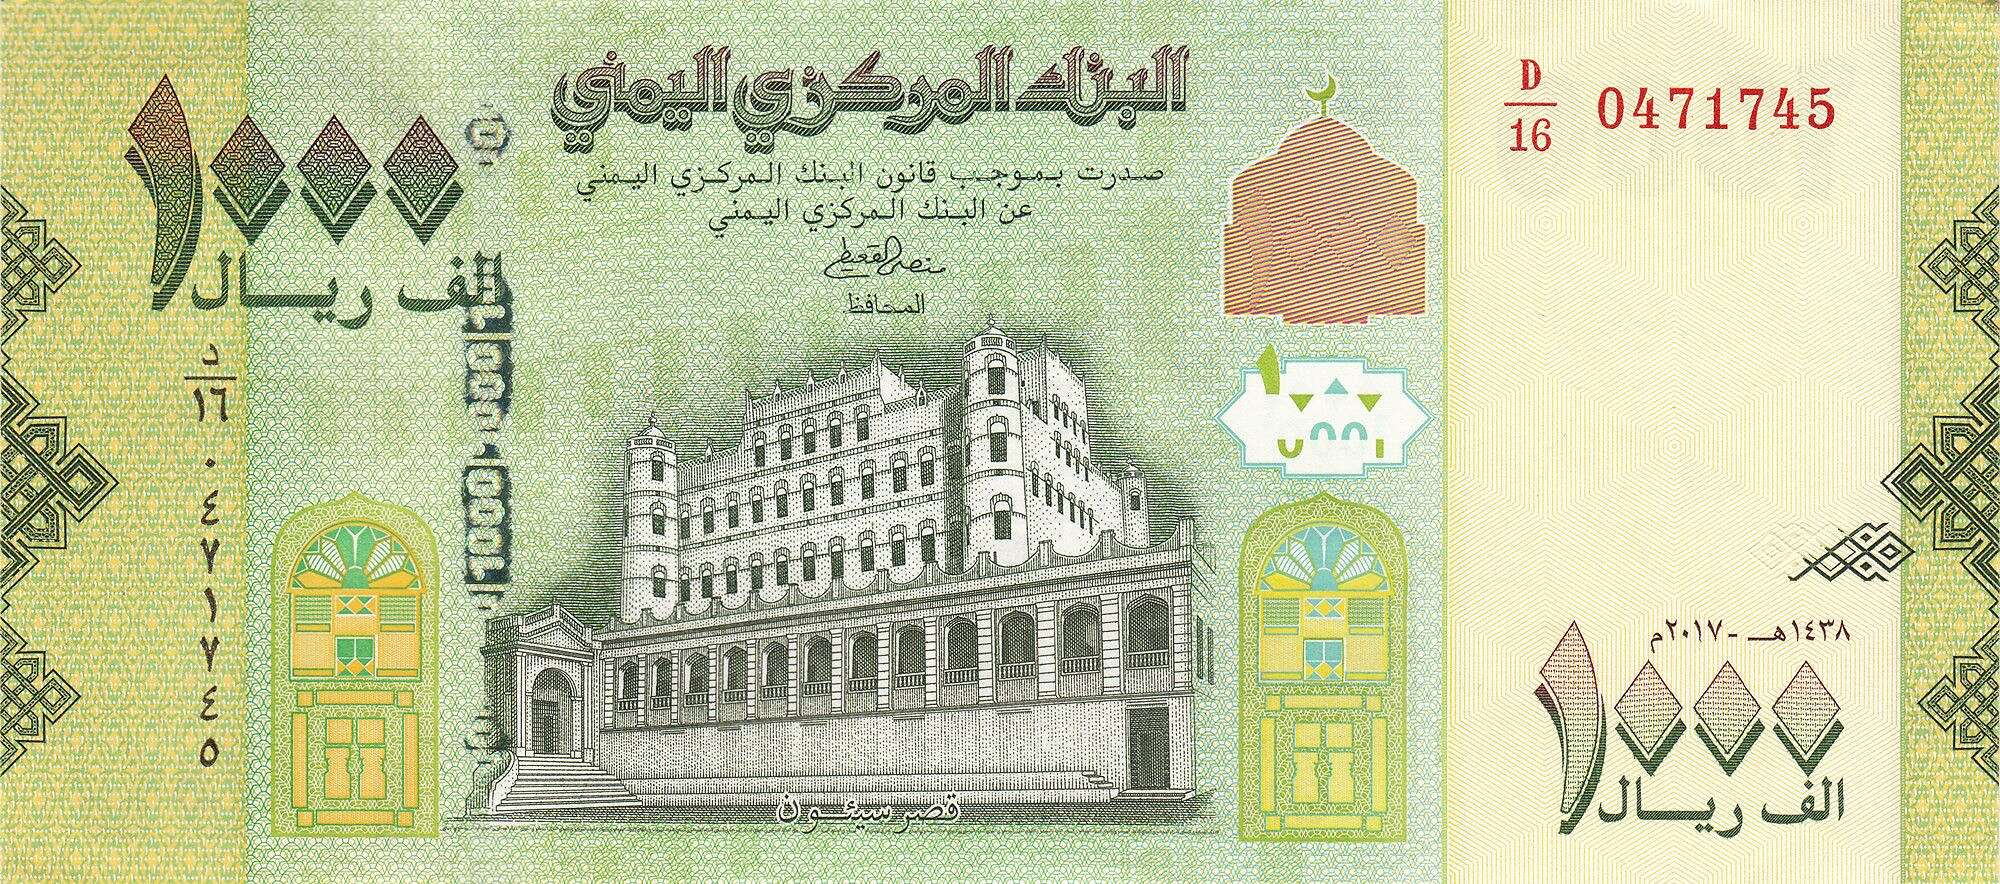 البنك المركزي اليمني في صنعاء يحدد أسعار صرف العملات في بيان جديد.. تفاصيل